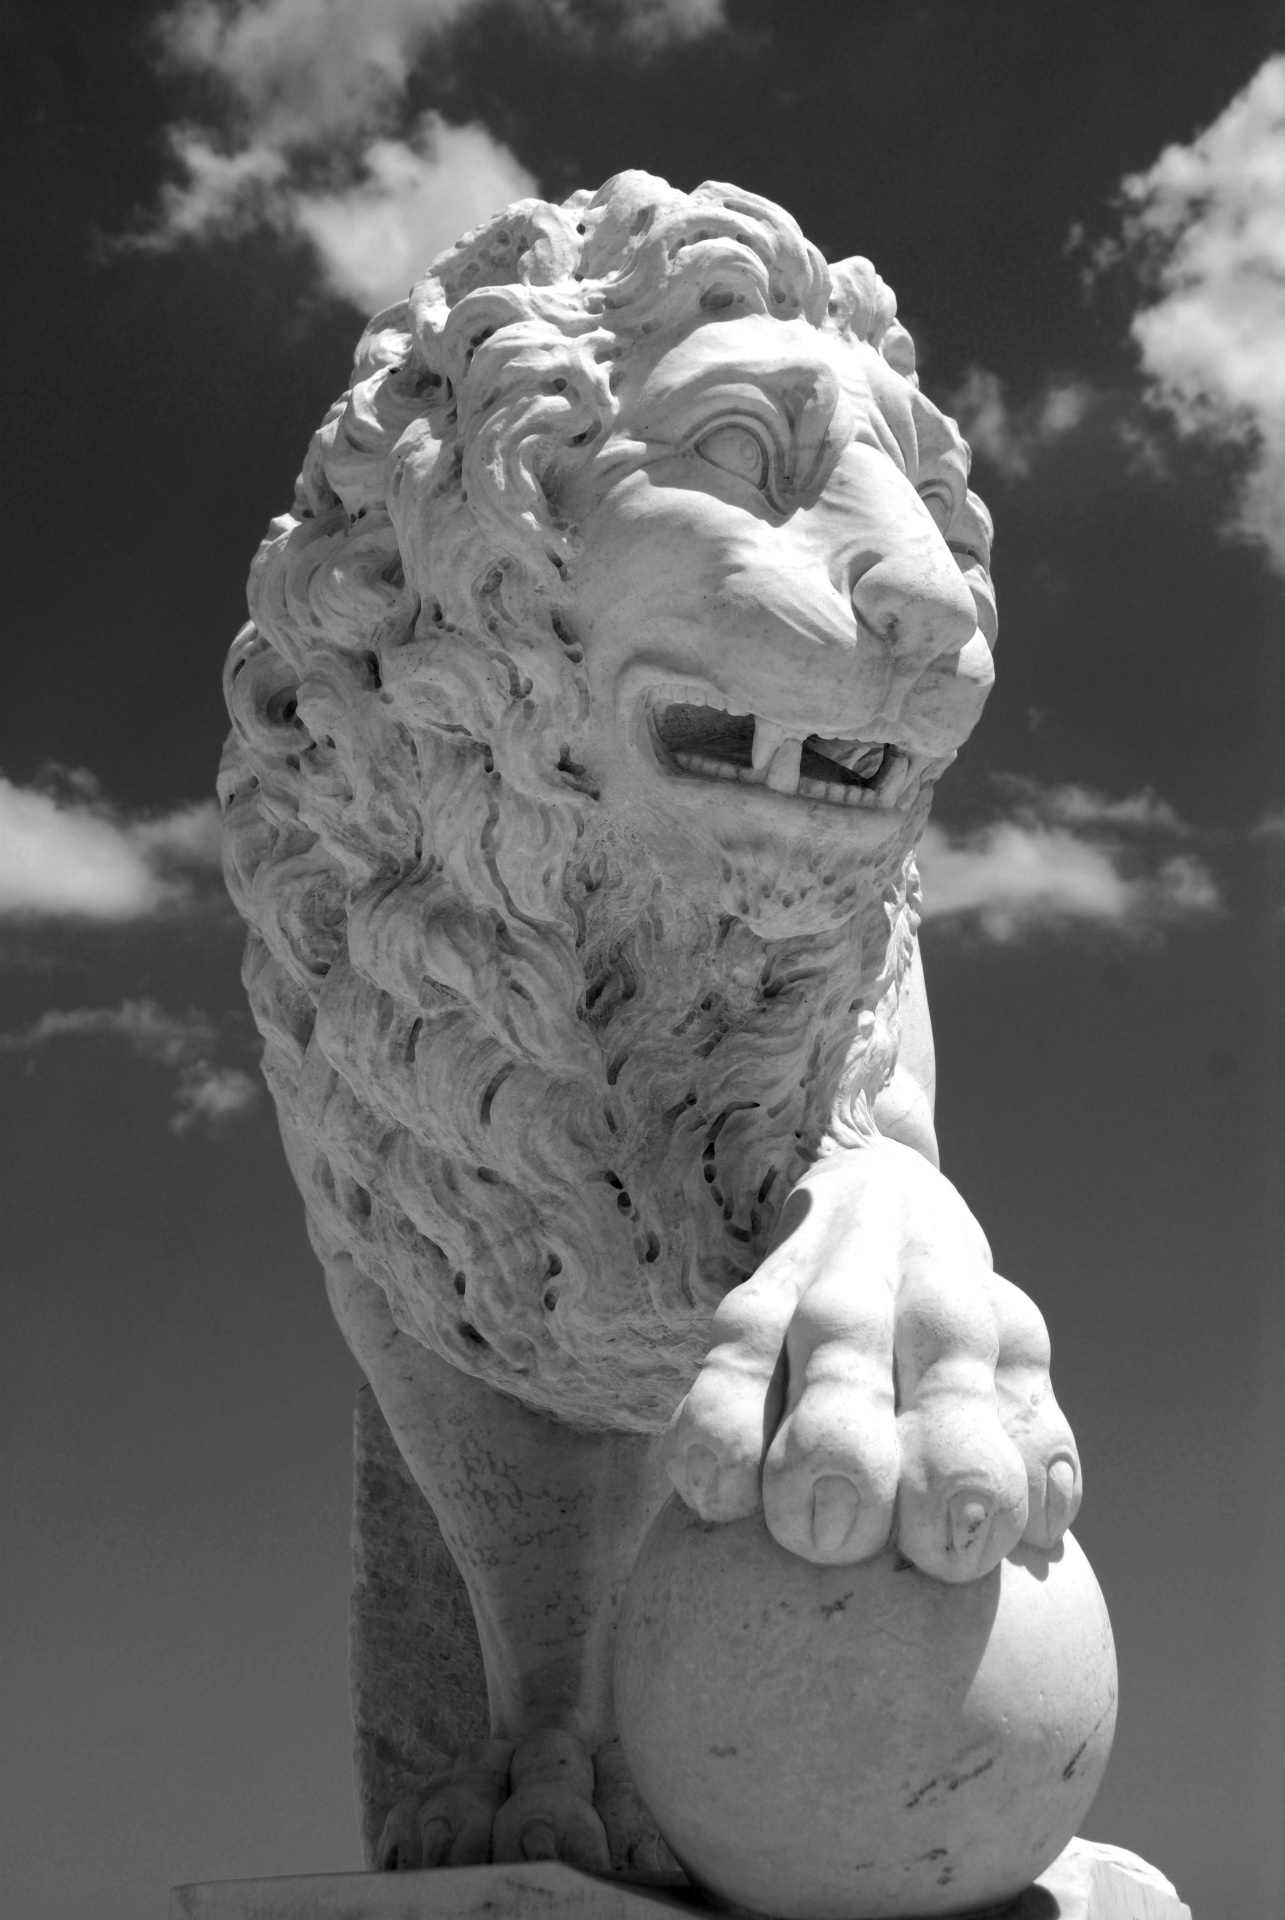 Lion Sculpture